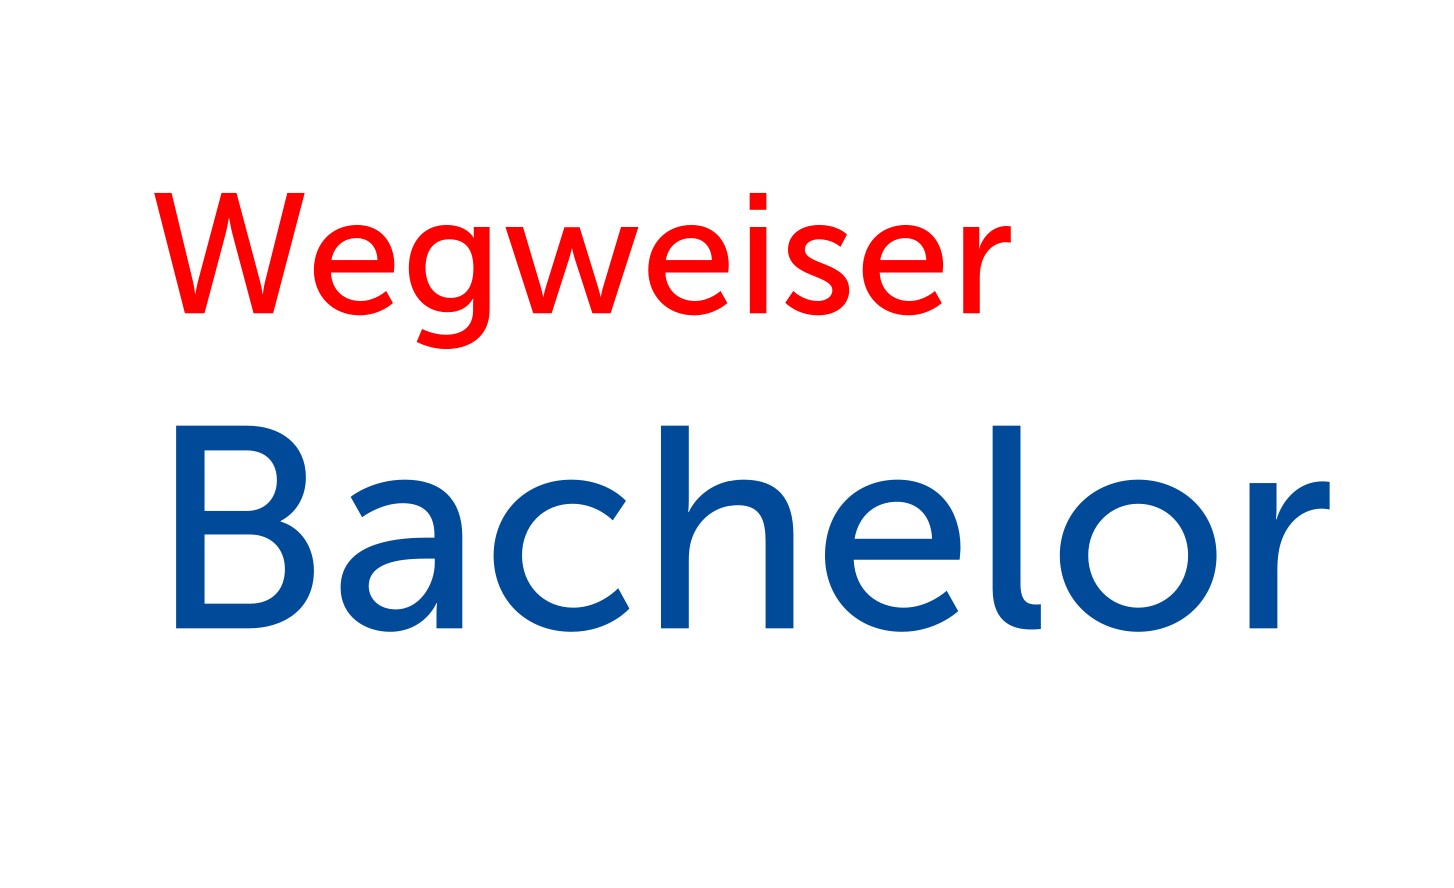 Wegweiser Bachelor